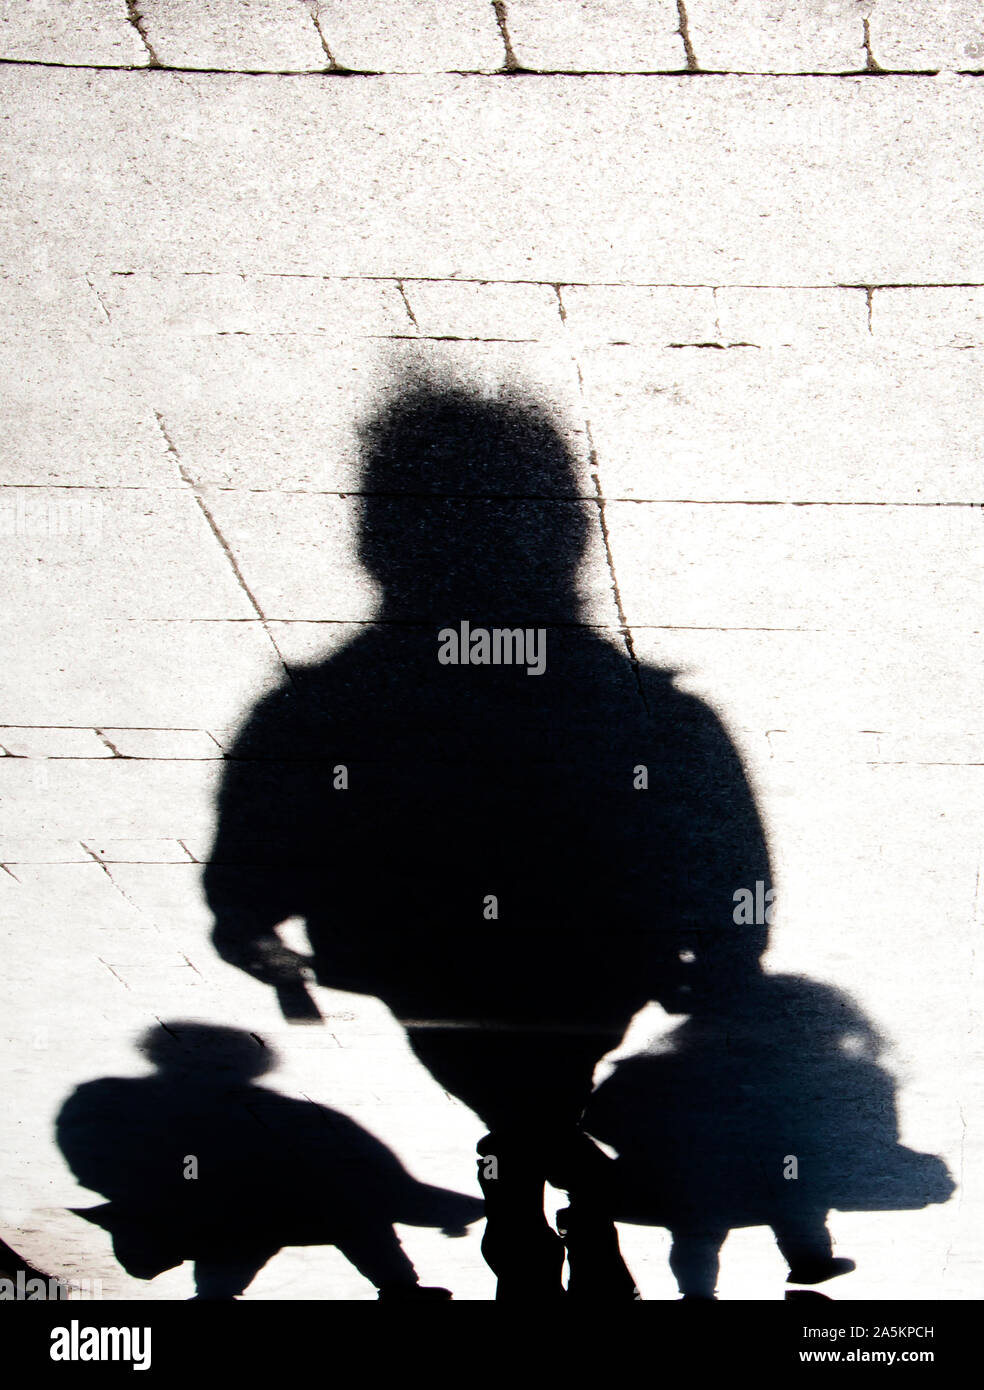 Sfocata distorta ombra silhouette di persone che camminano sulla via della città marciapiede in alto contrasto bianco e nero Foto Stock